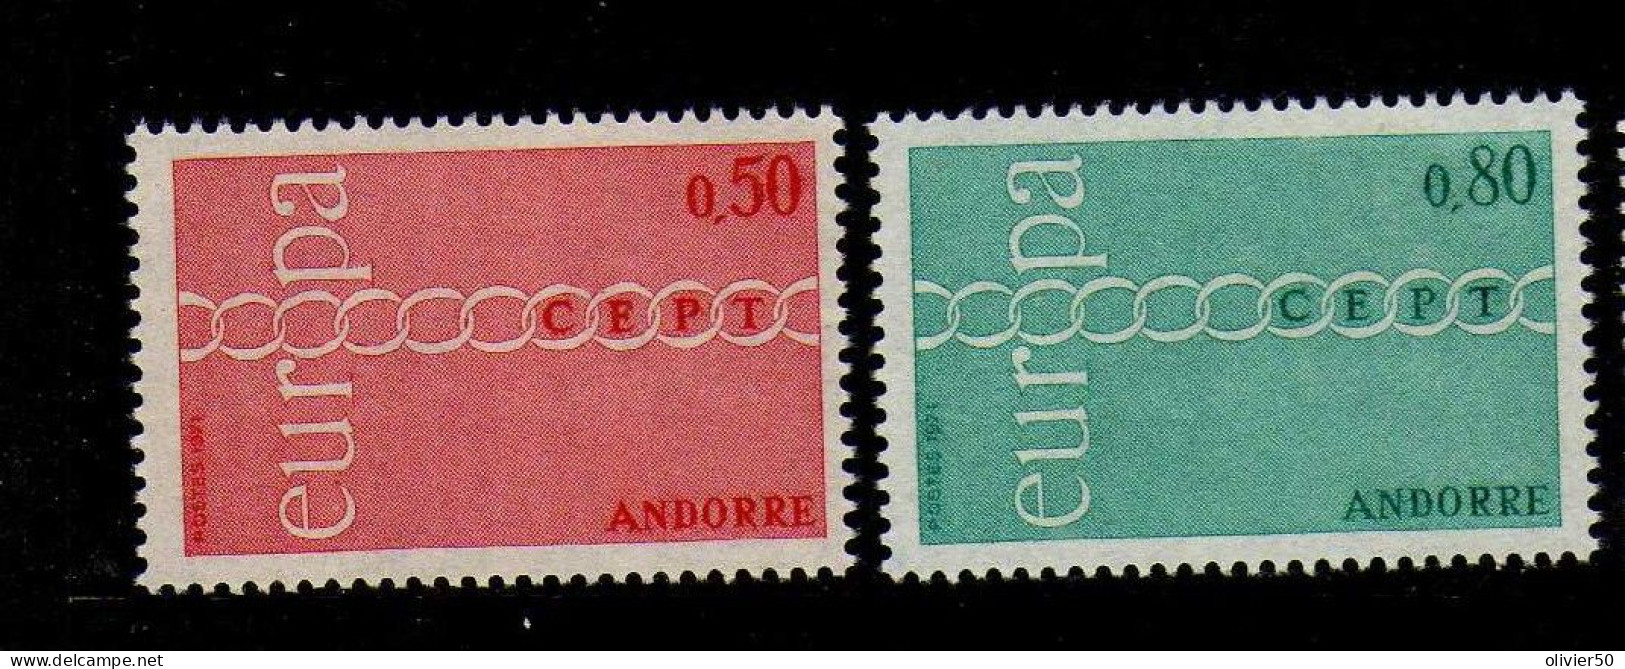 Andorre Francaise -  1971 - Europa  -Neufs** - MNH  - - Nuevos